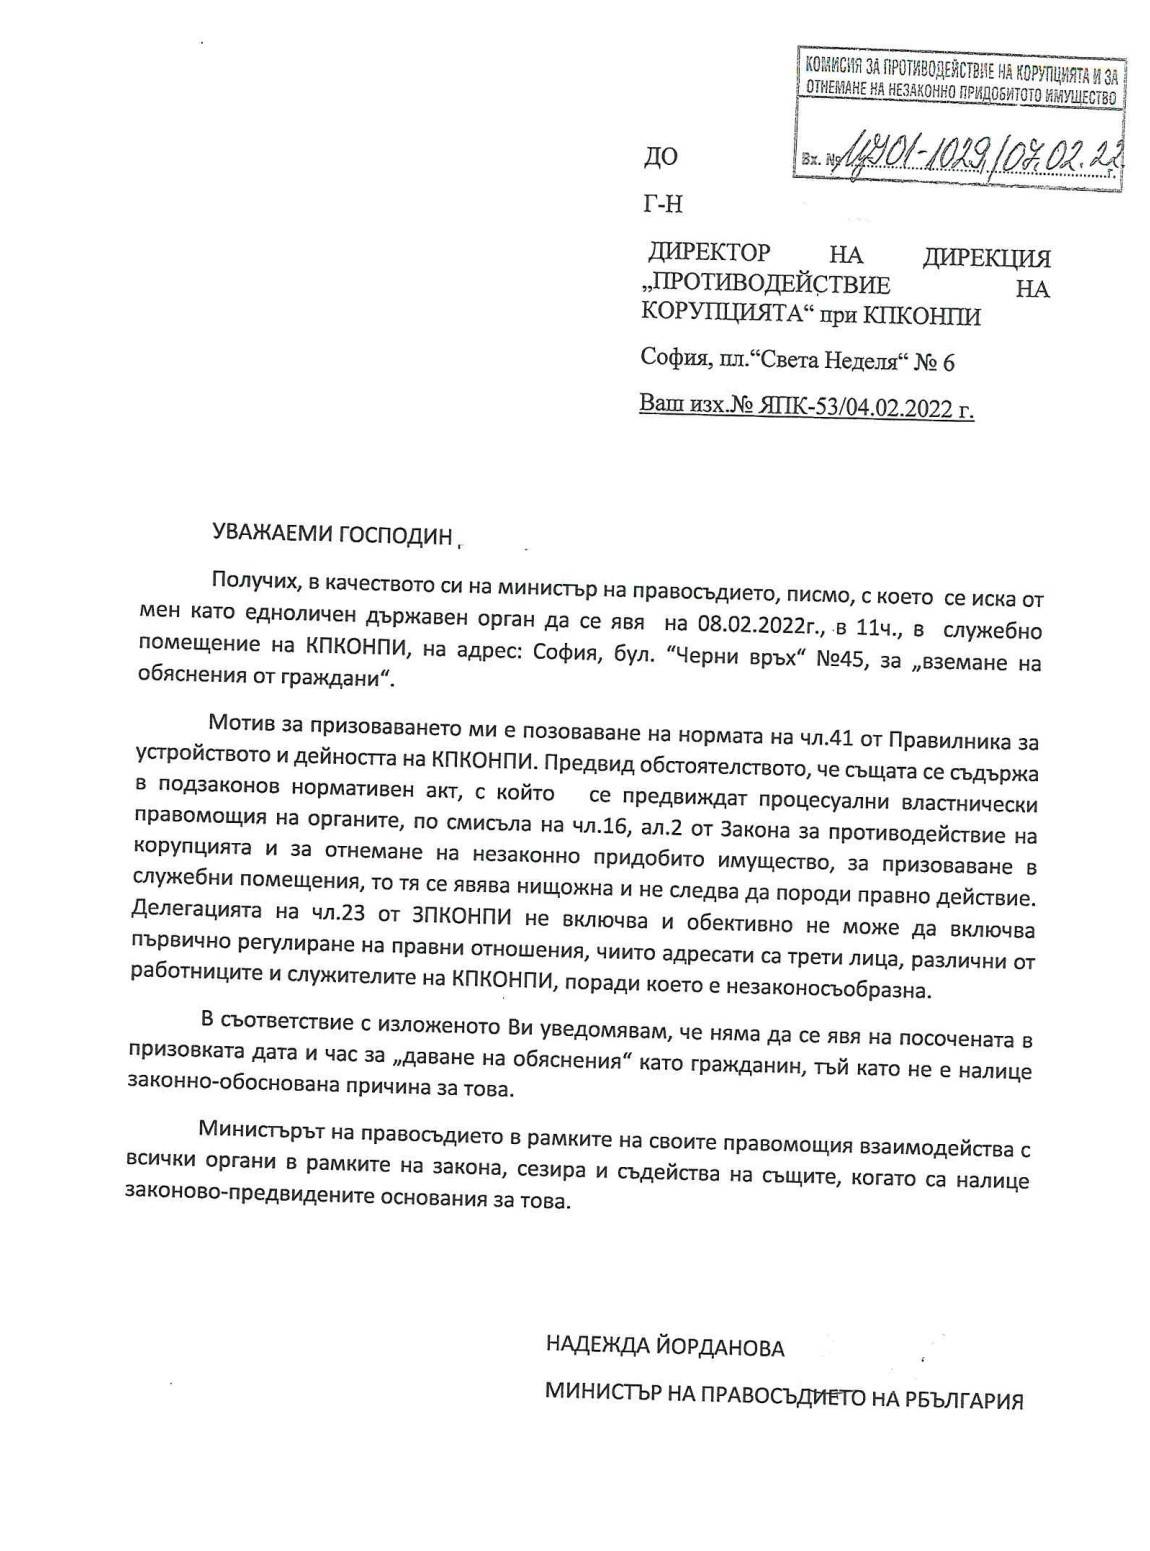 Наглото писмо на Надежда Йорданова, временно министър на правосъдието